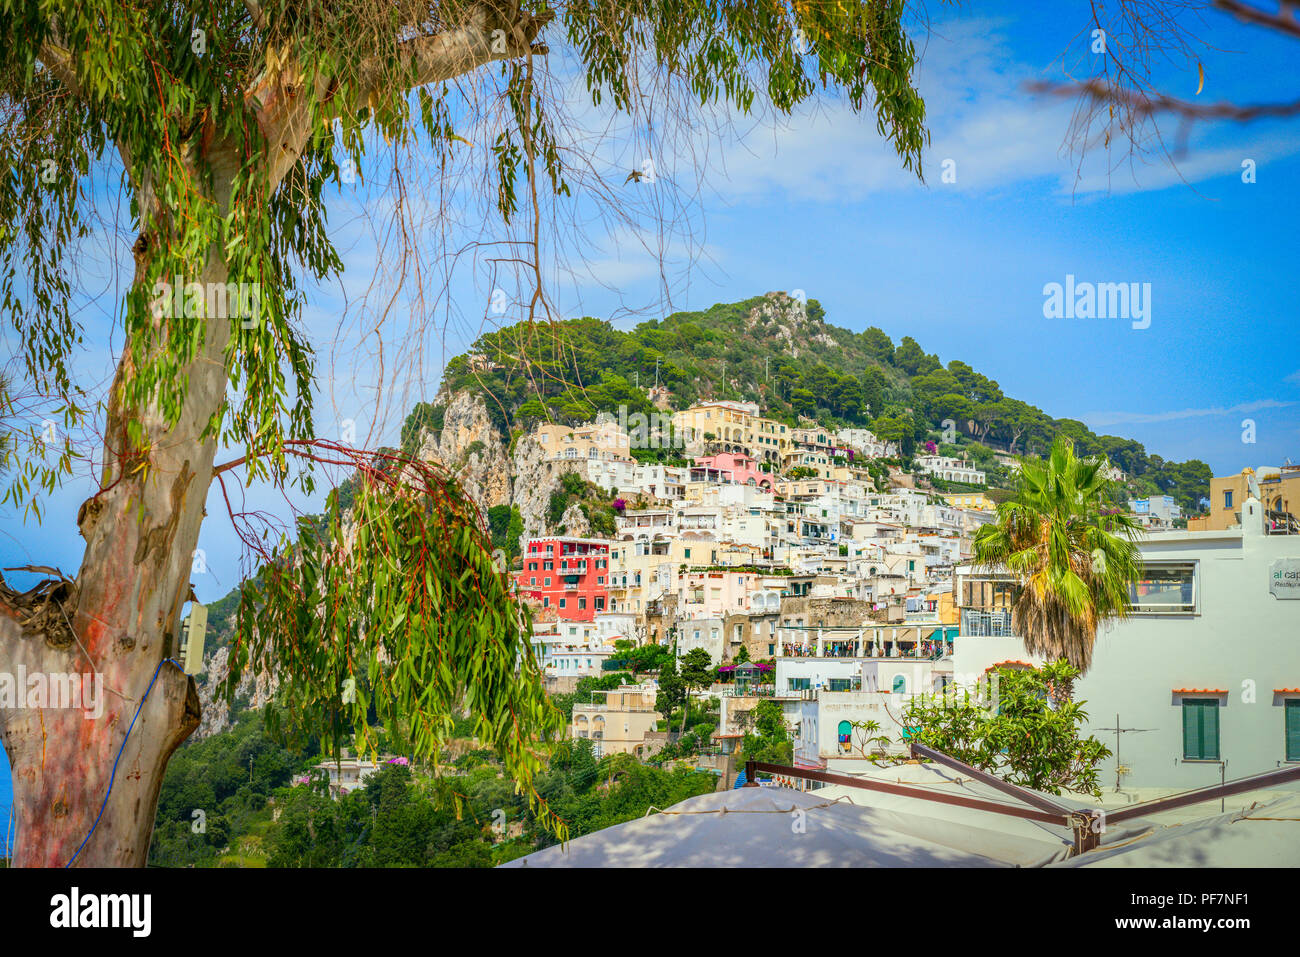 La città di Capri, costruito sul lato della scogliera sull' isola di Capri Foto Stock